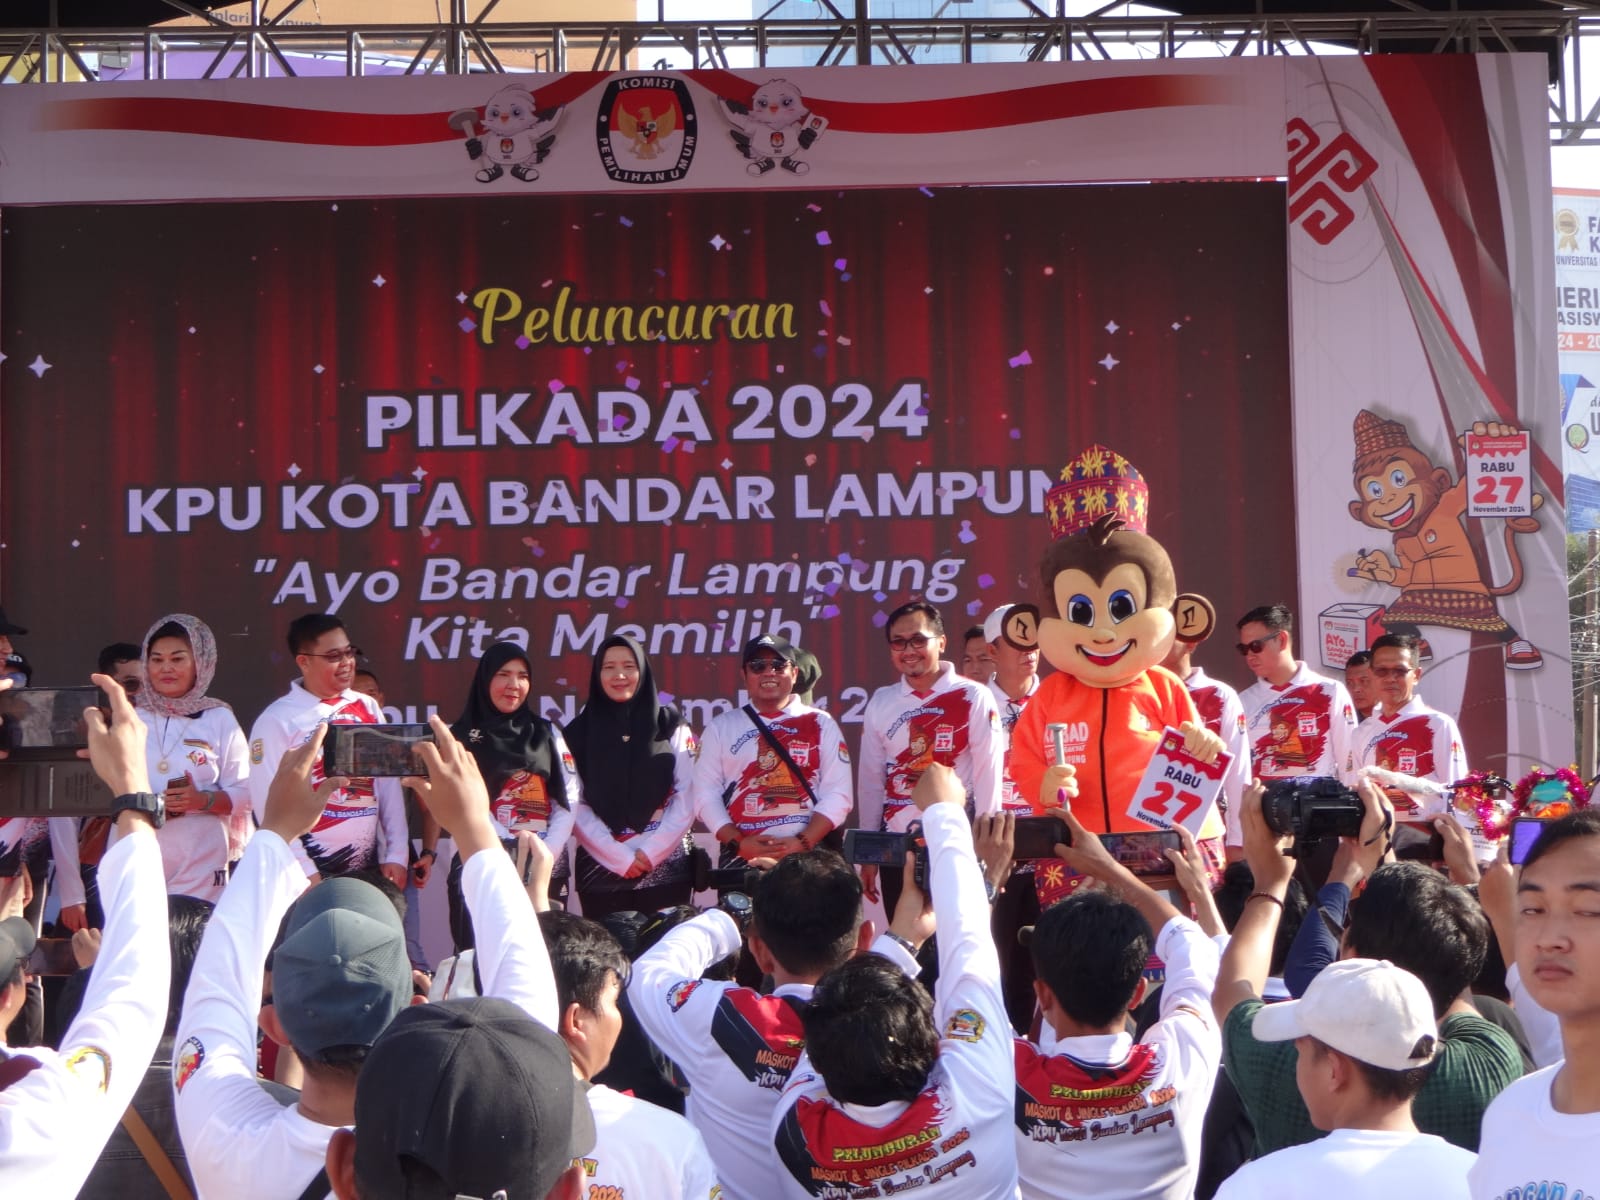 Maskot Kera Jantan Untuk Pilkada Bandar Lampung 2024 Bernama Kerabad, Ternyata Ini Maknanya